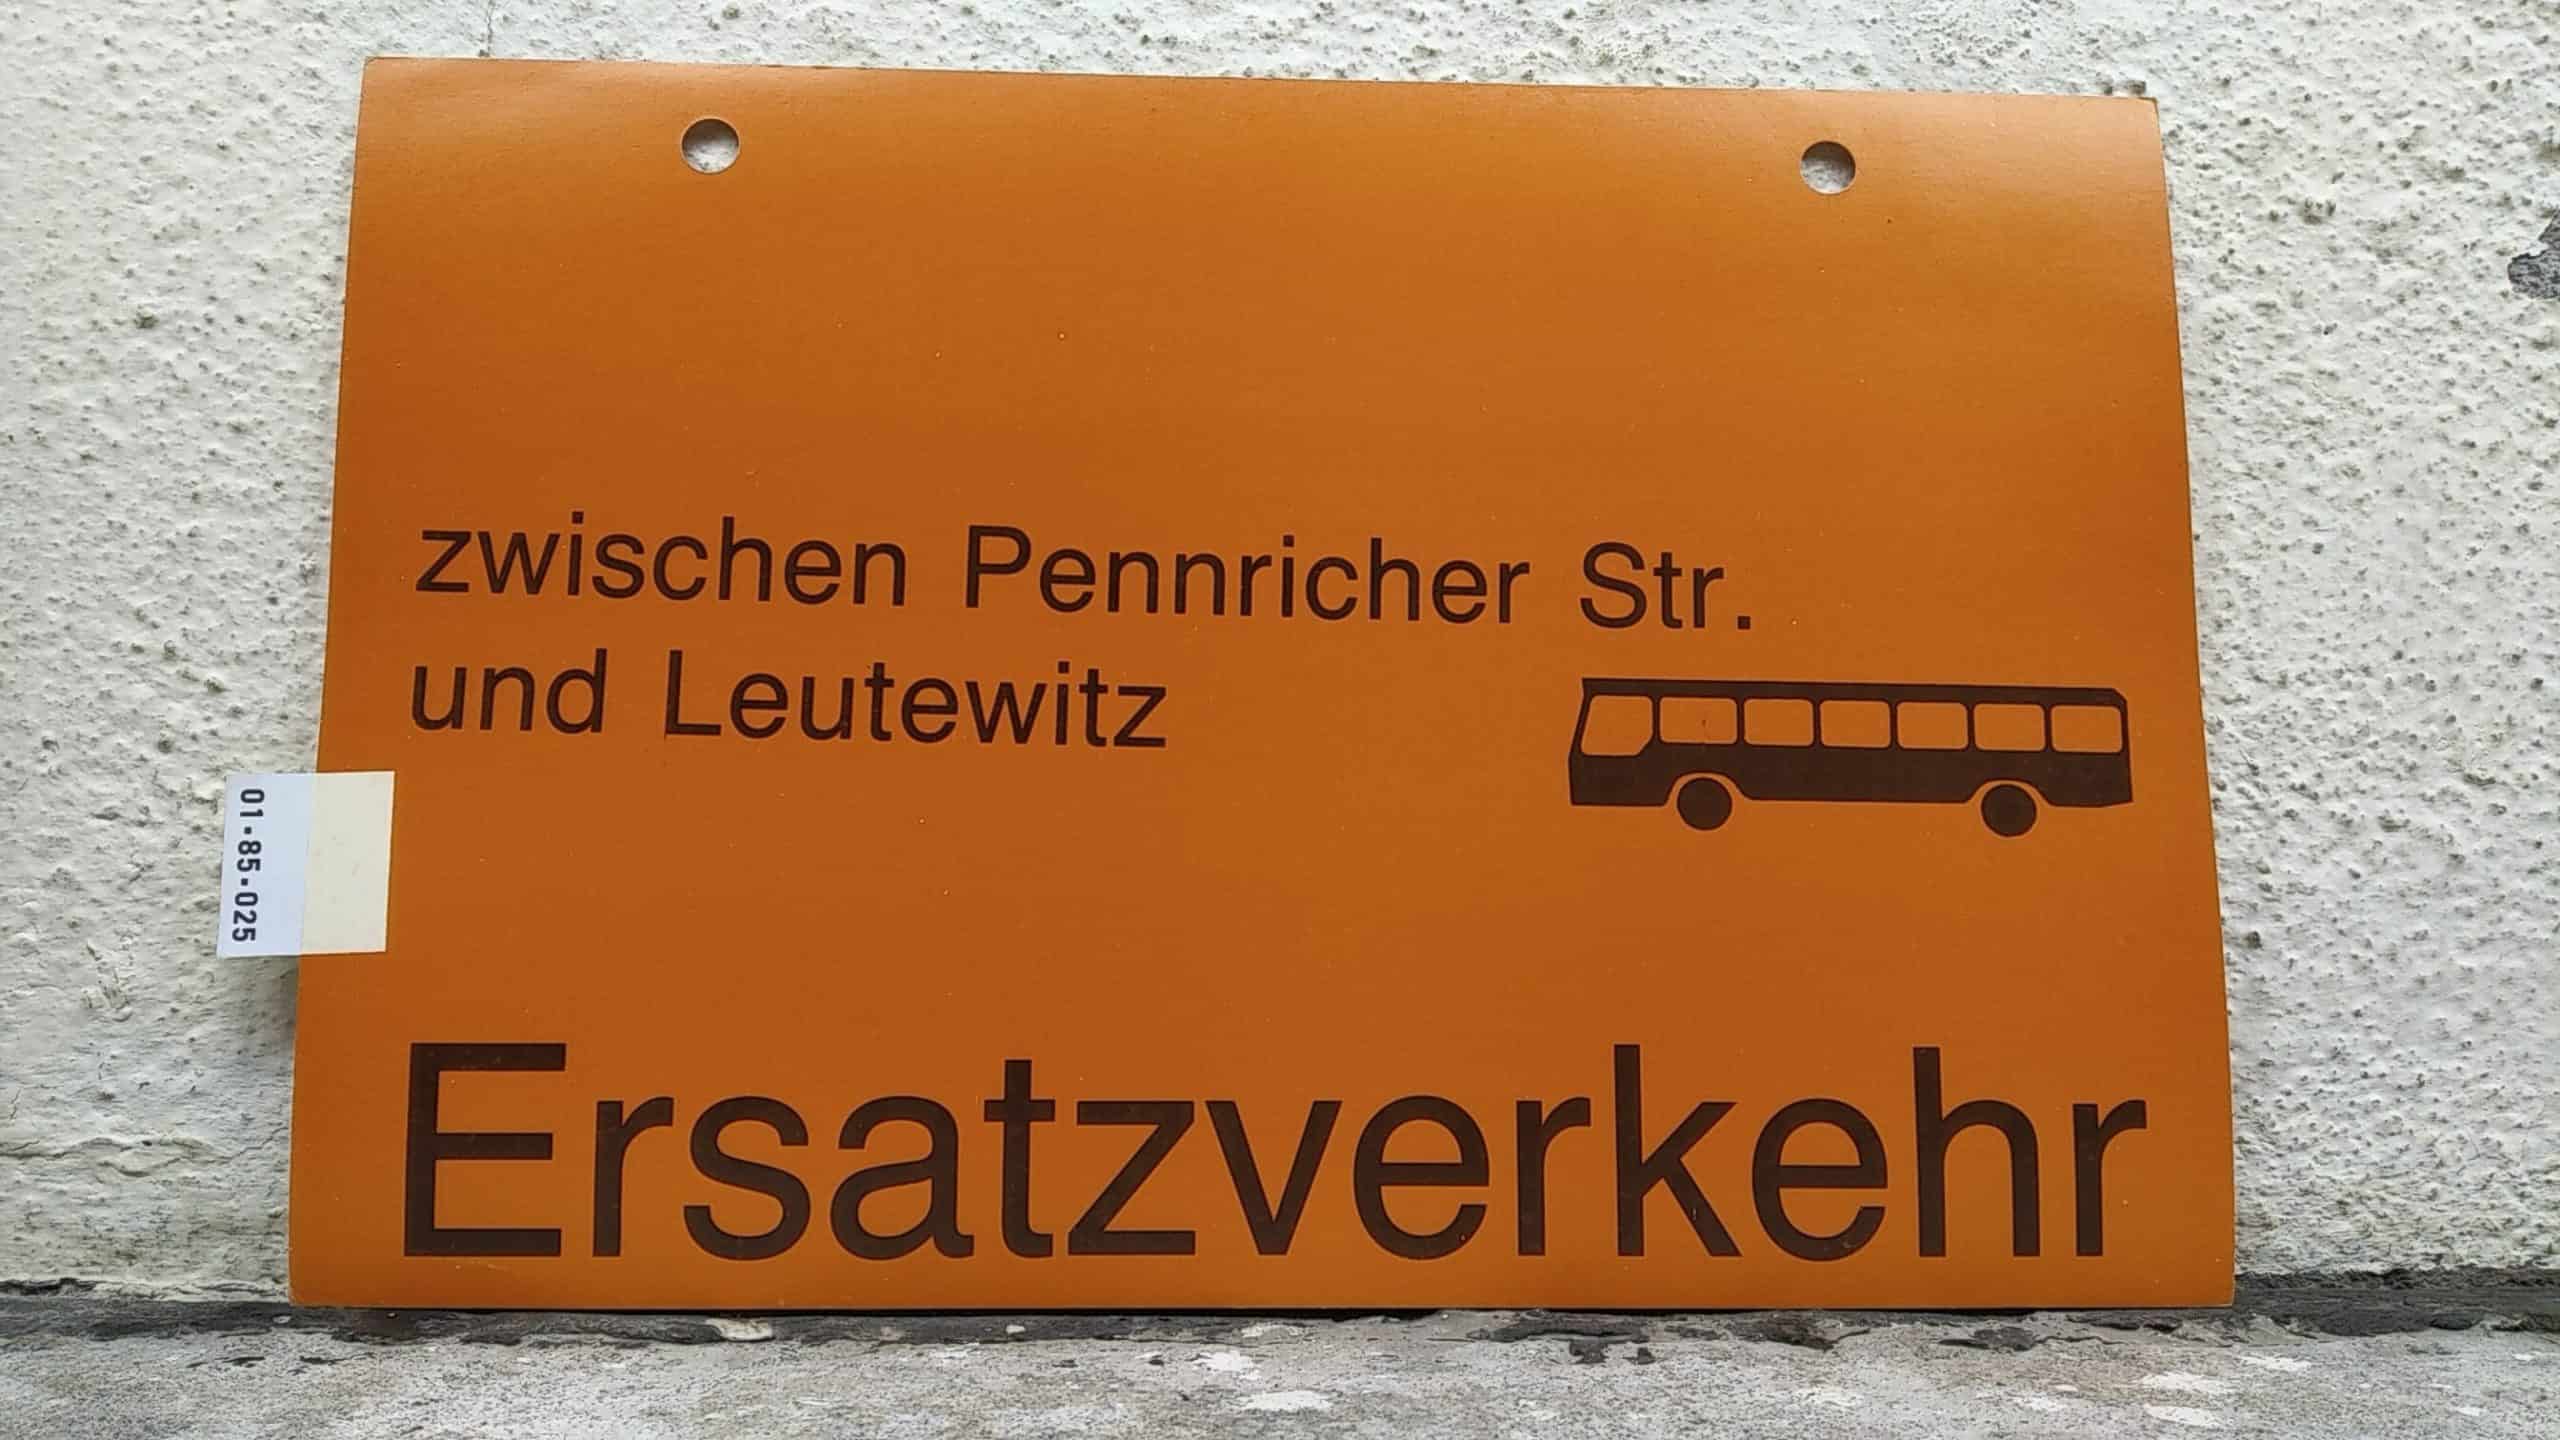 Ein seltenes Straßenbahn-Umleitungsschild aus Dresden: zwischen Pennricher Str. und Leutewitz [Bus neu] Ersatzverkehr